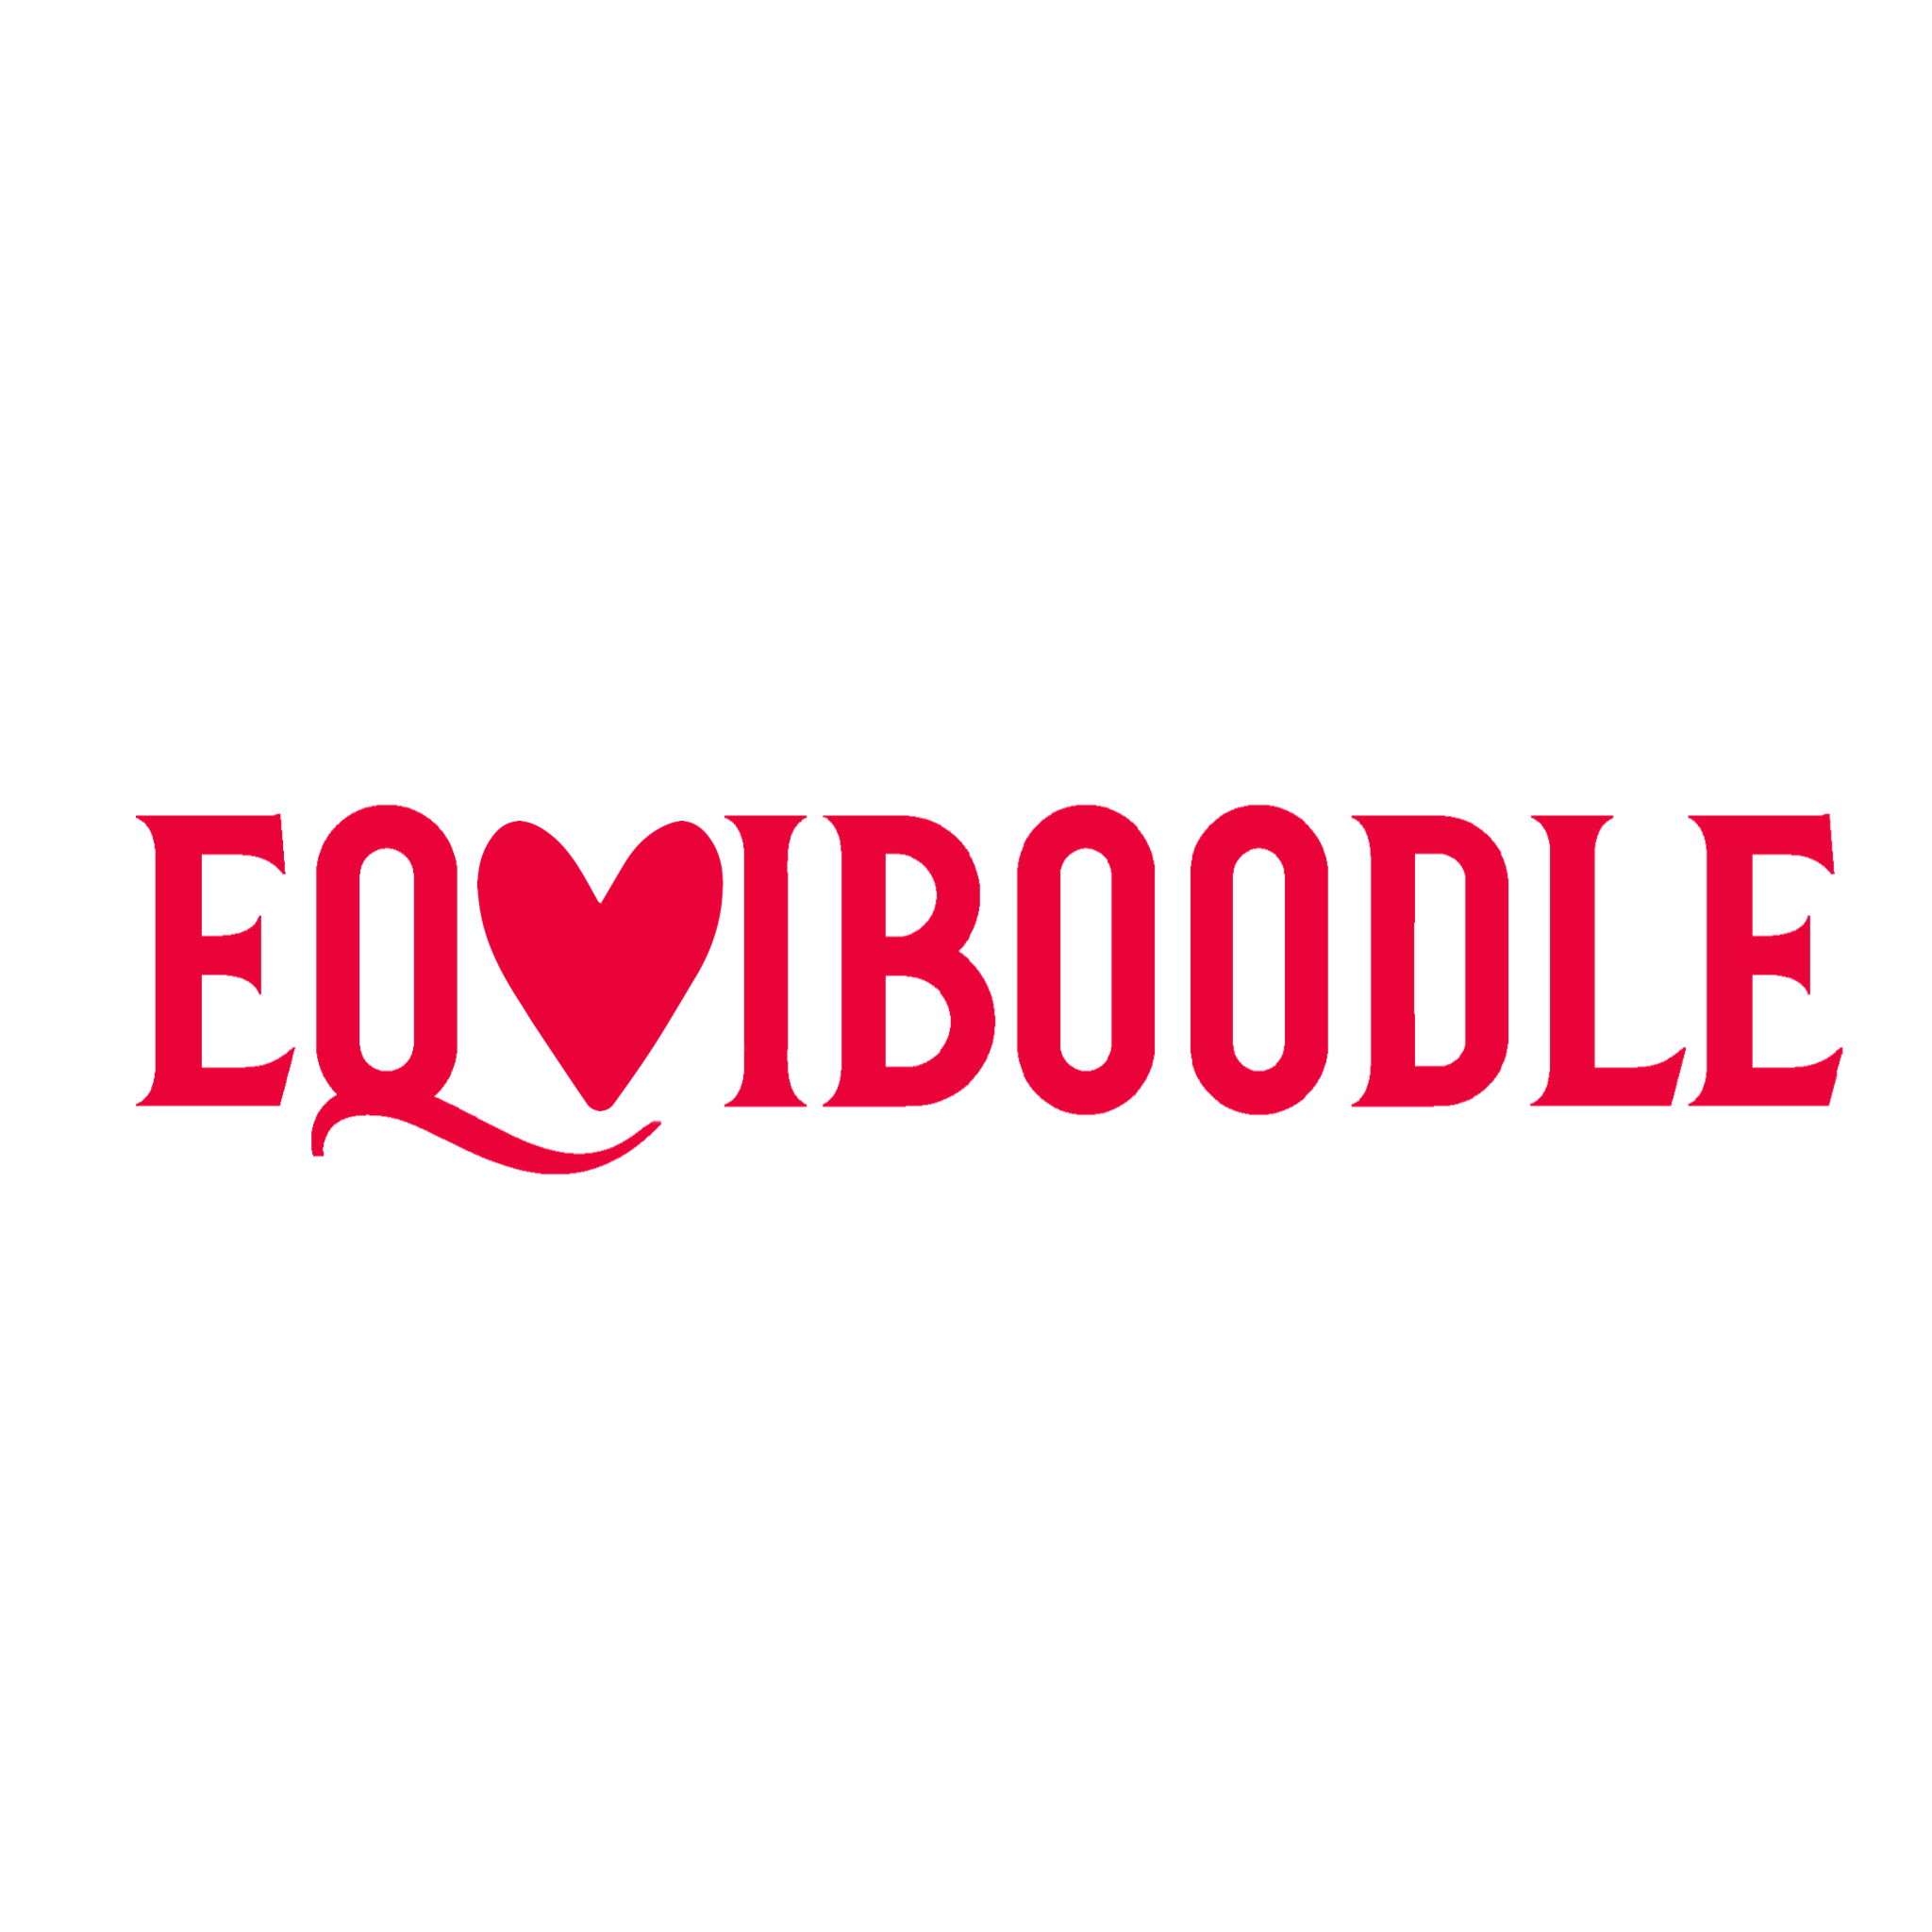 Equiboodle 